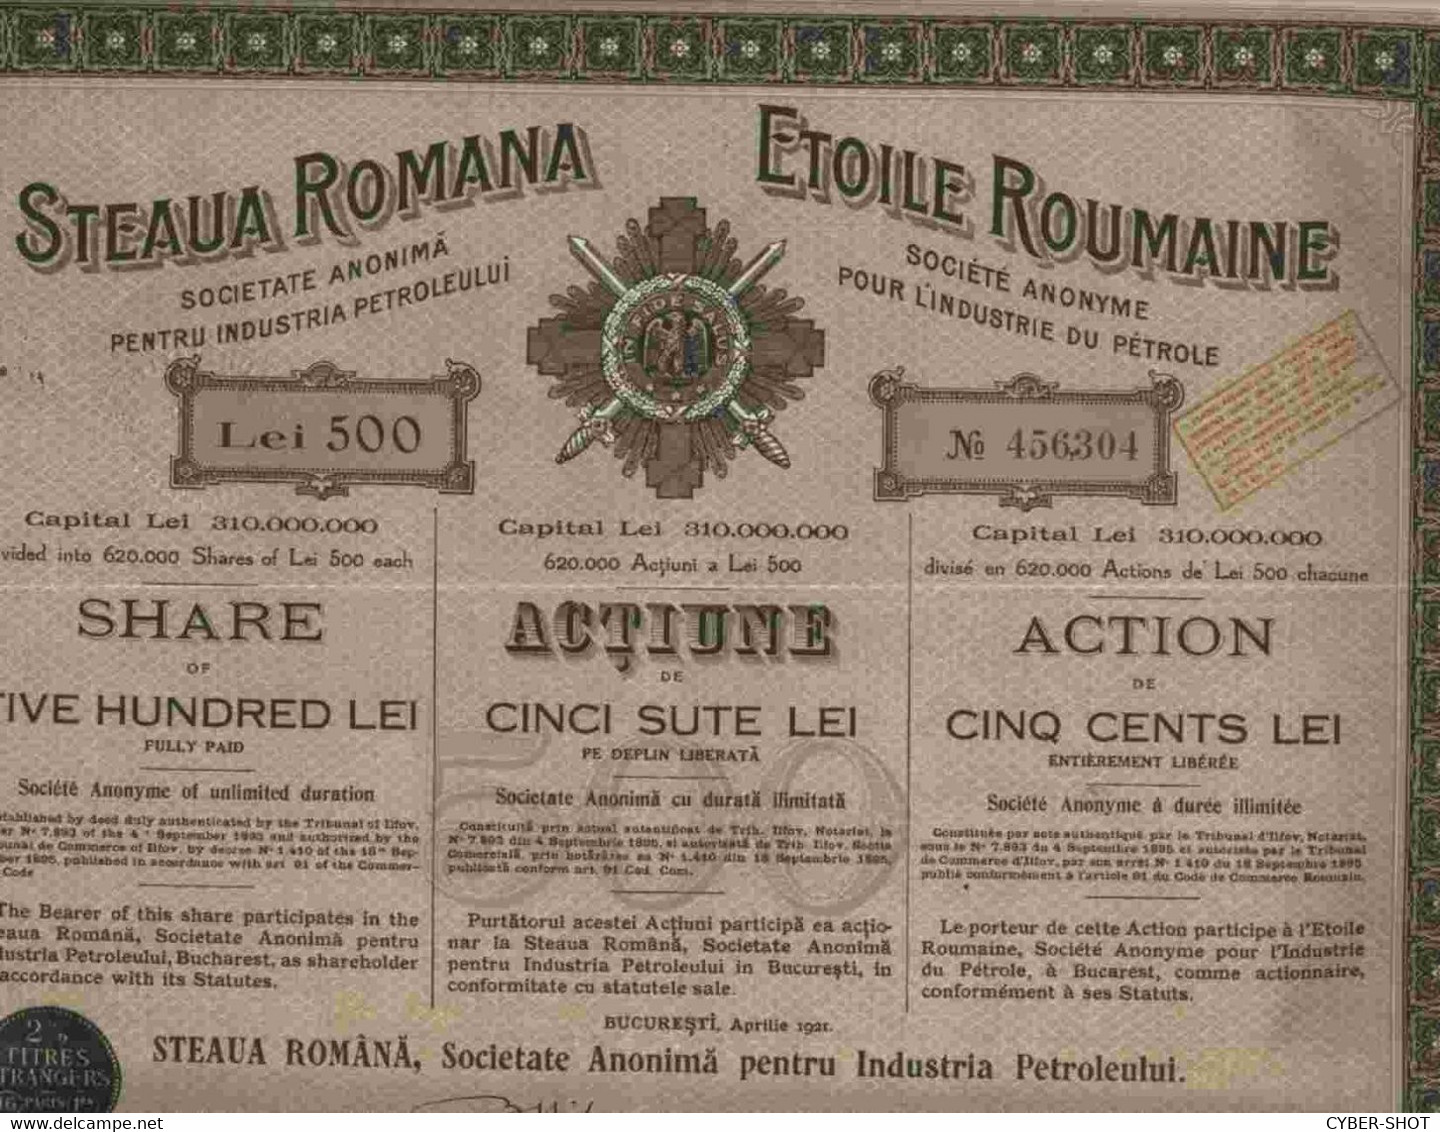 LOT OF 46 X : STEAUA ROMANA - SOC. ANON. PENTRU INDUSTRIA PERTOLEULUI 1921 & 1923 & 1924 - Pétrole